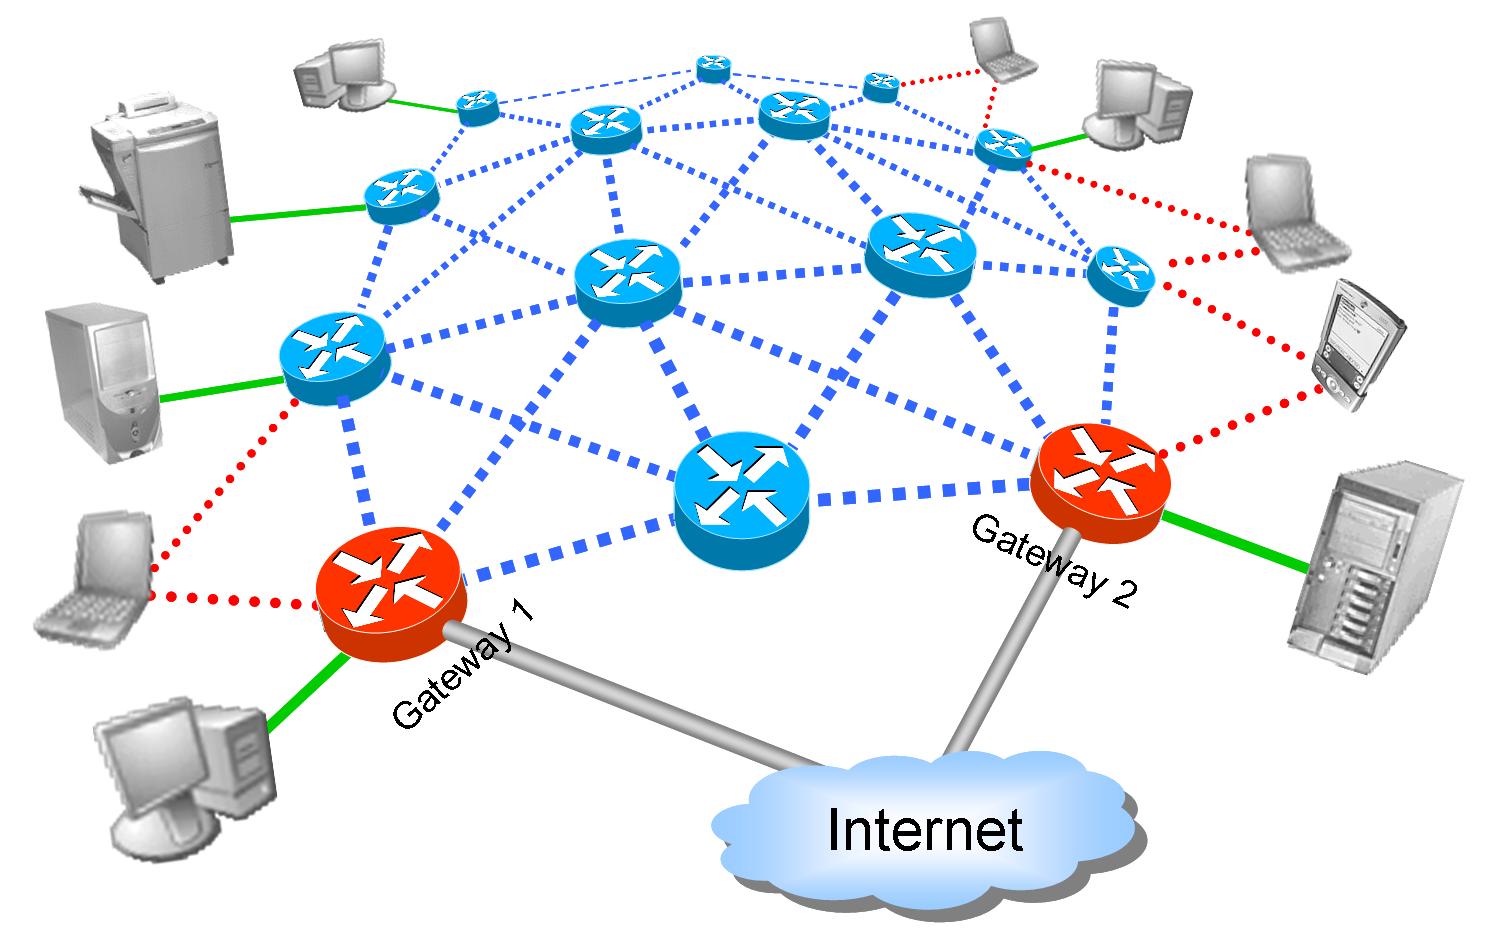 Извинить сеть. Архитектура Mesh сети. Локальная сеть ячеистая топология. Сети WIFI Mesh. Full Mesh сеть.